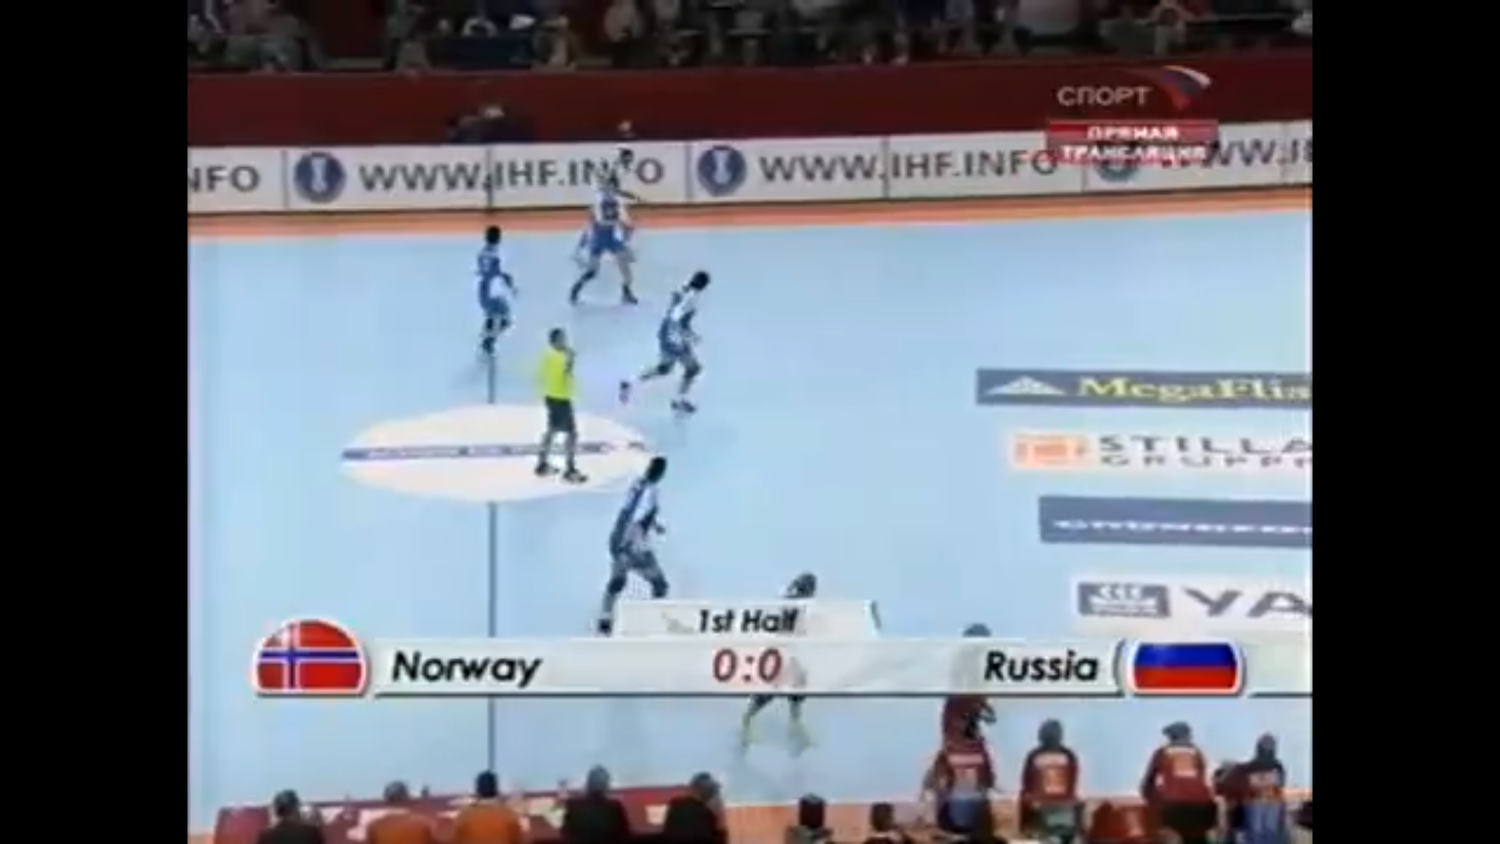 Гандбол. Чемпионат мира 2007. Финал. Норвегия - Россия